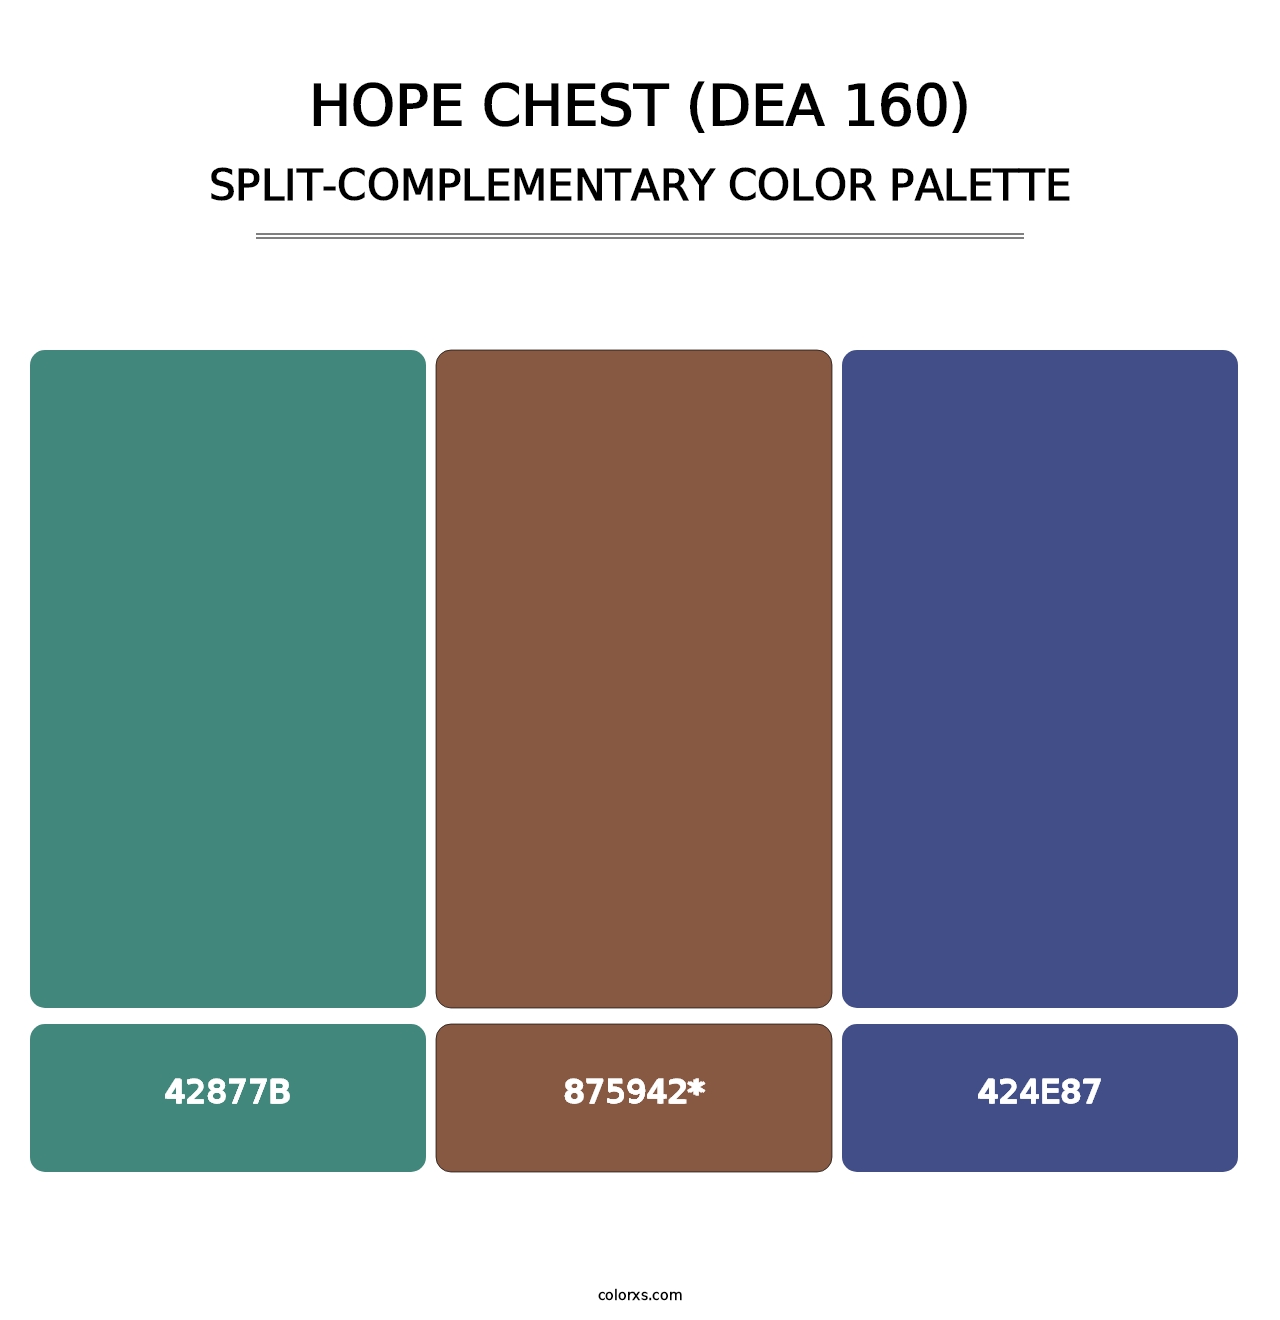 Hope Chest (DEA 160) - Split-Complementary Color Palette